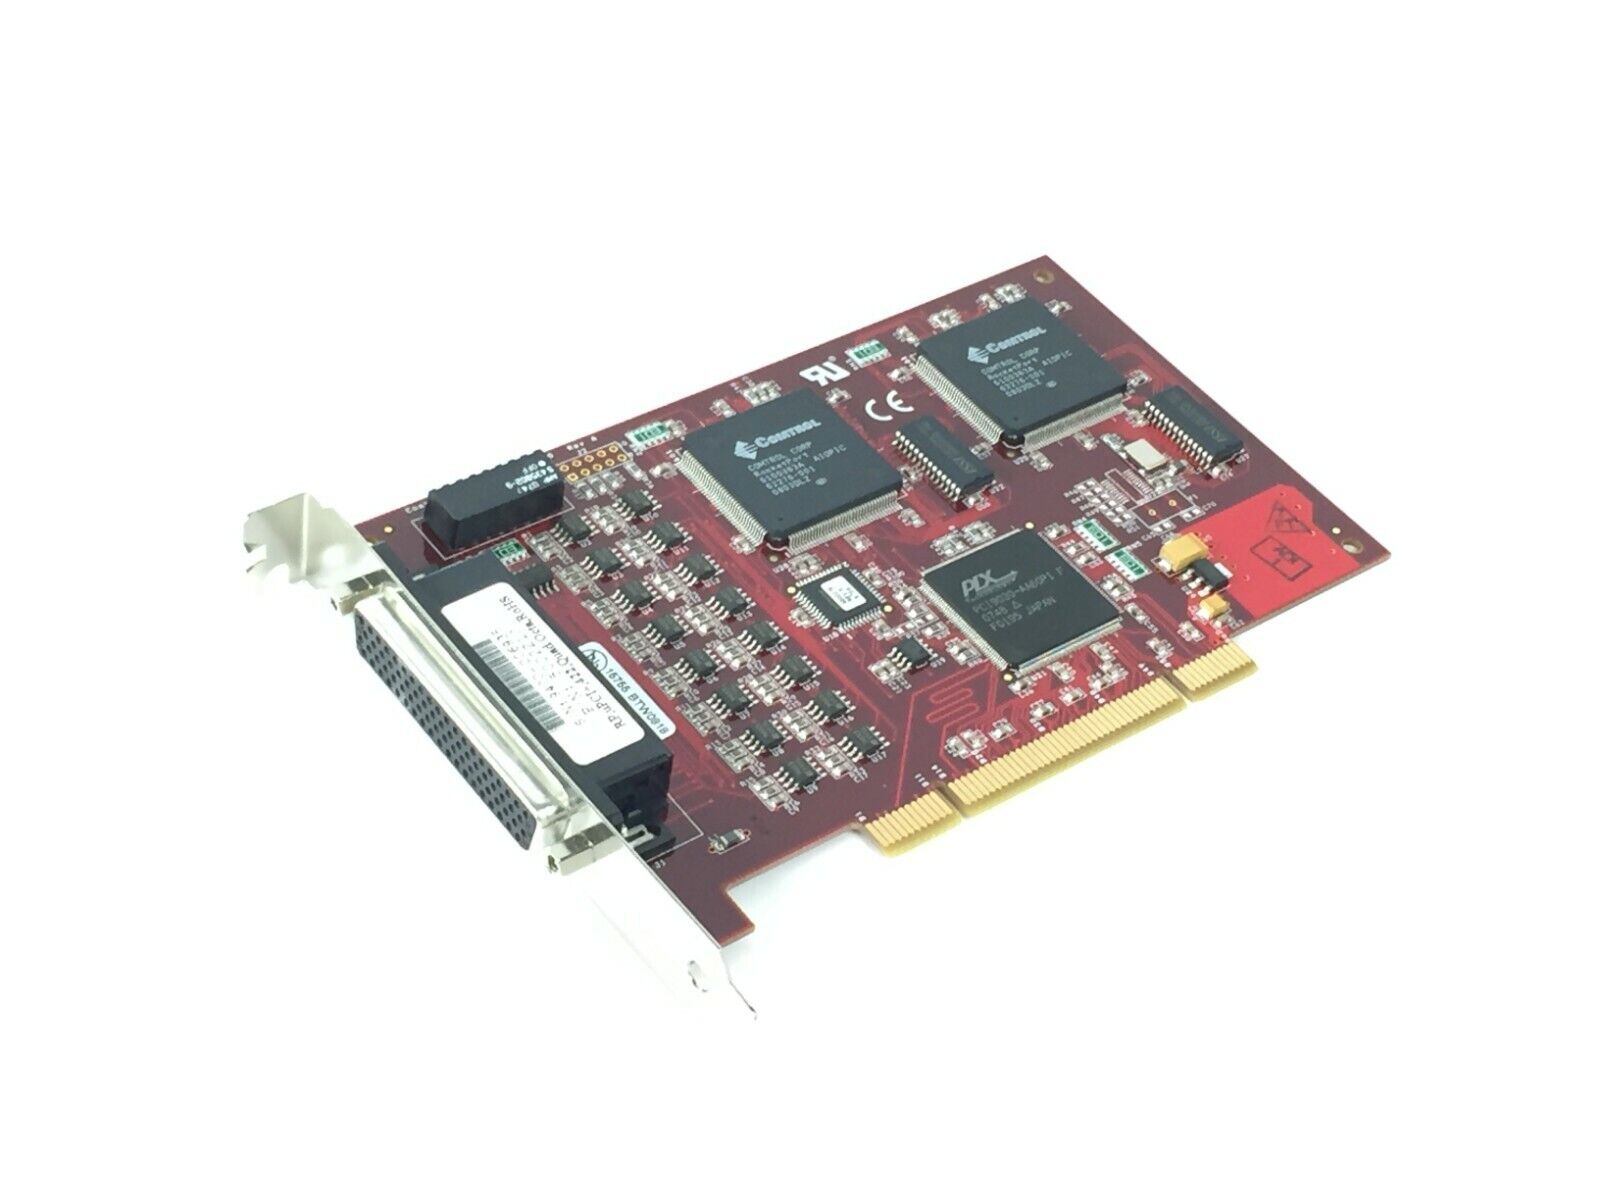 Comtrol 5002210 RocketPort UPCI+ Quad/Octa 422 ROHS PCI Adapter Serial Card